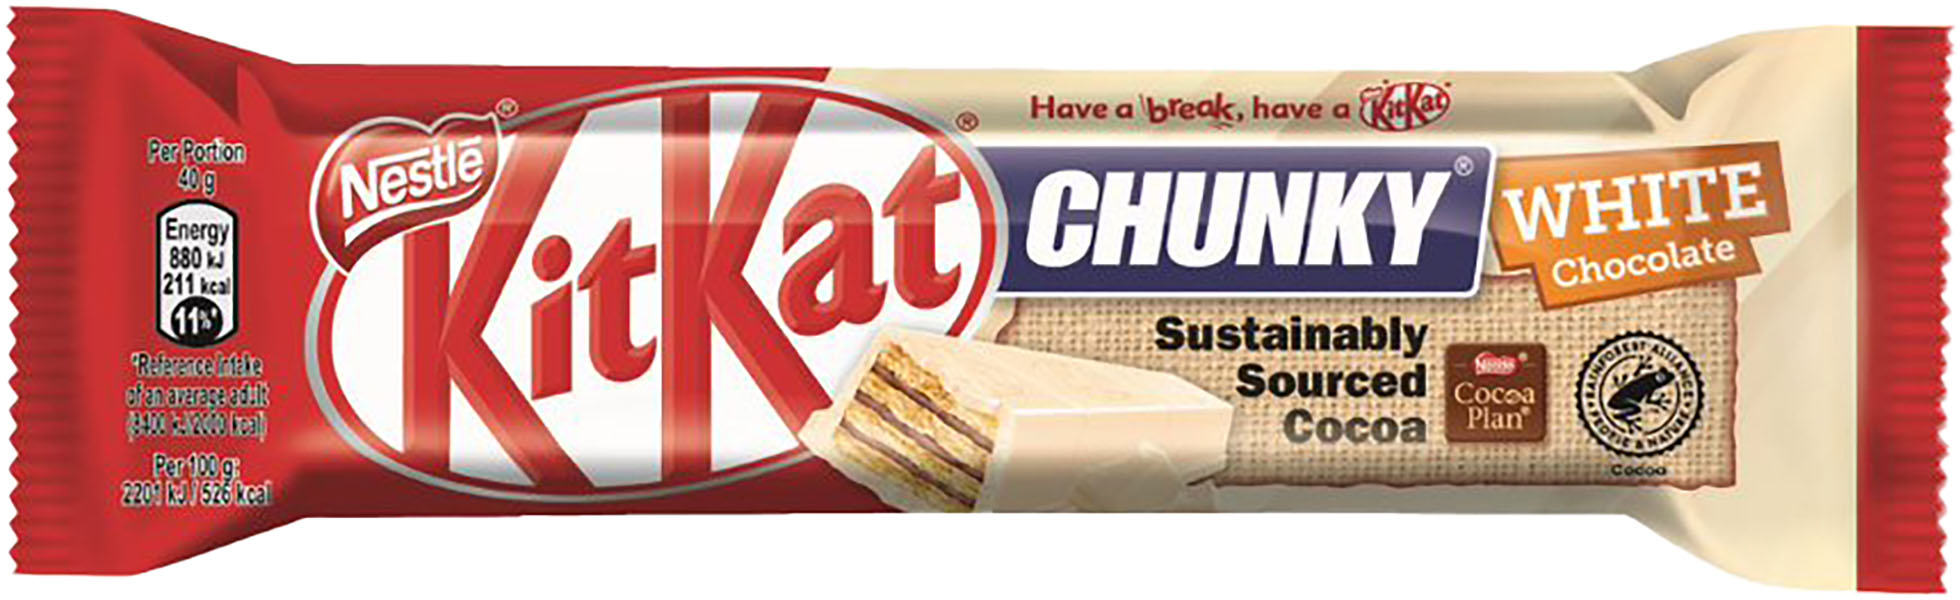 Slika za Čokoladica Kit Kat chunky white 40g